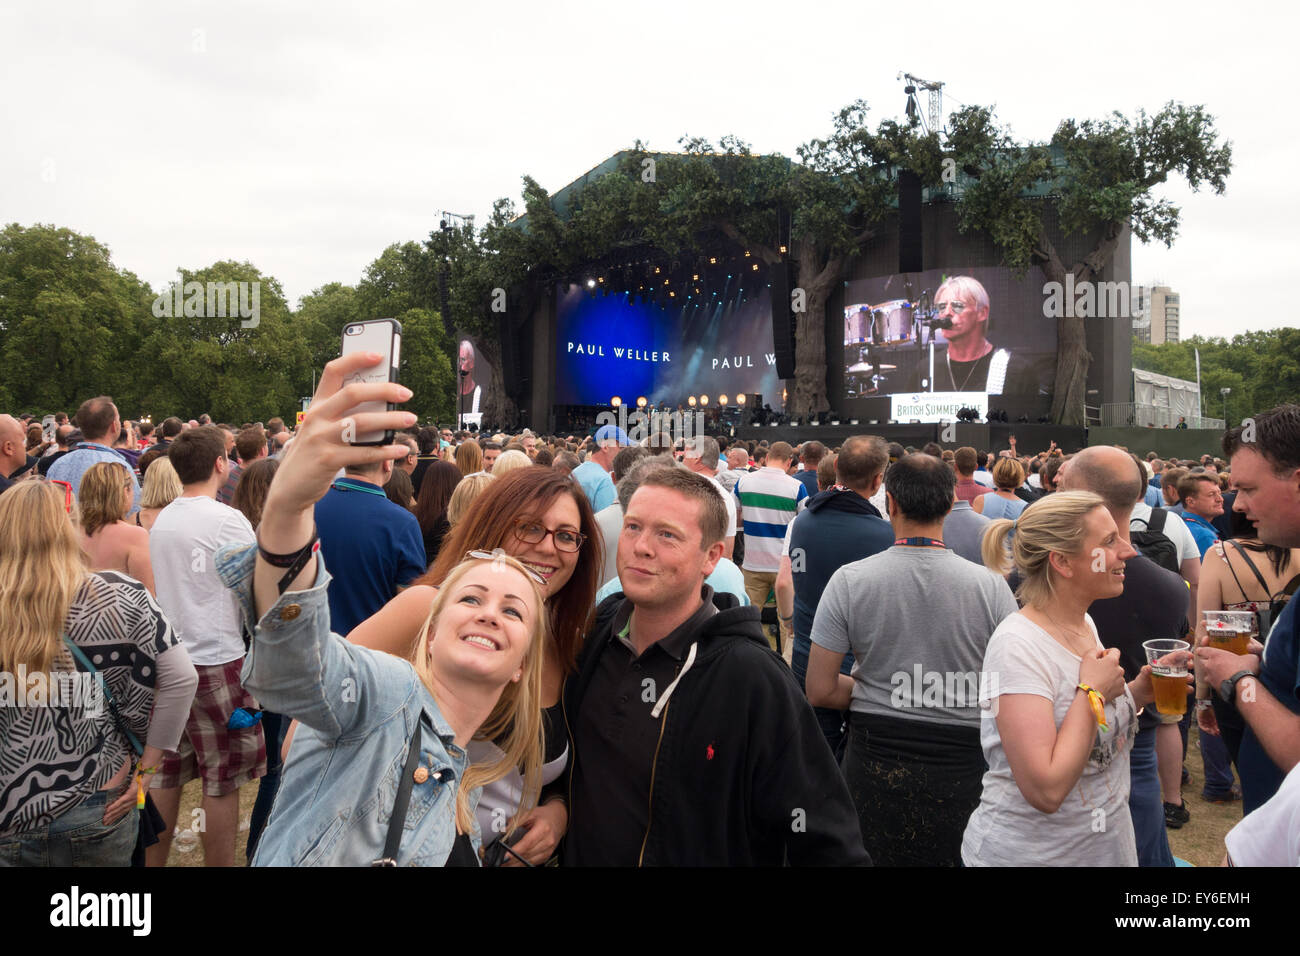 ¿Cuándo comenzó la estúpida moda de hacerse selfies con el escenario o banda de fondo? Las-personas-que-toman-un-selfie-foto-en-un-concierto-de-musica-rock-el-verano-britanico-hyde-park-londres-reino-unido-ey6emh